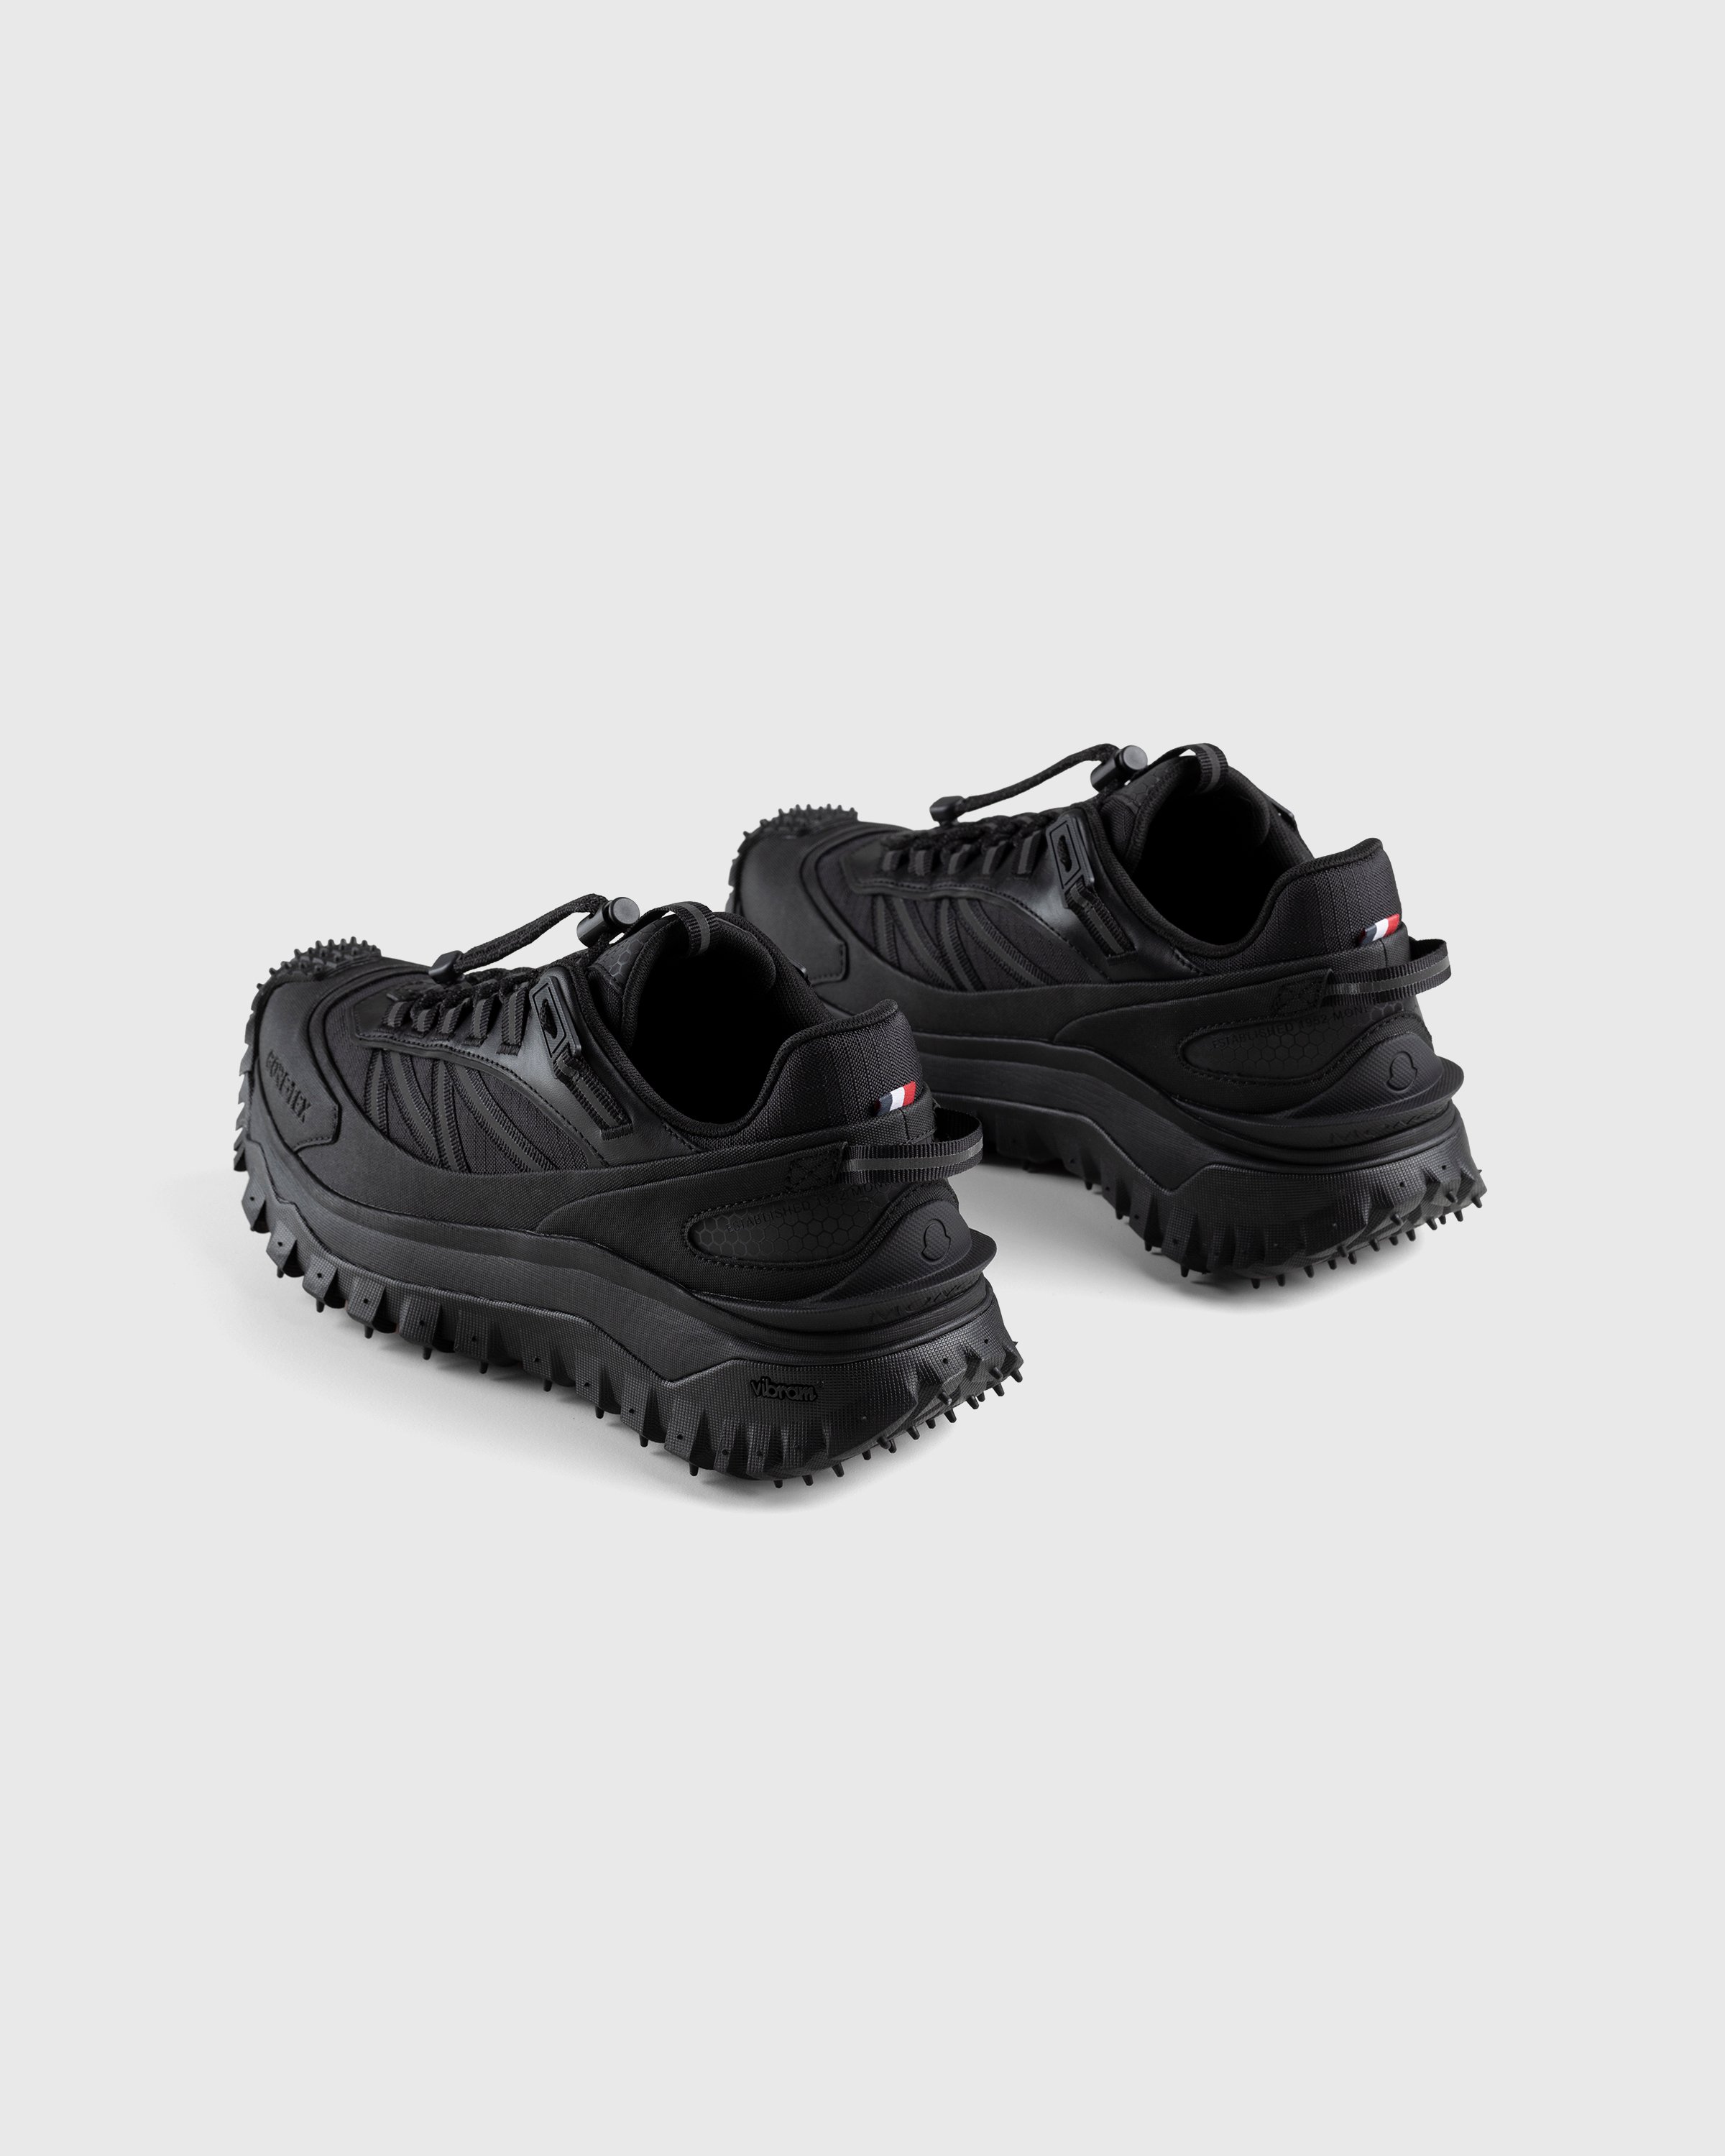 Moncler - Trailgrip GTX Sneakers Black - Footwear - Black - Image 4